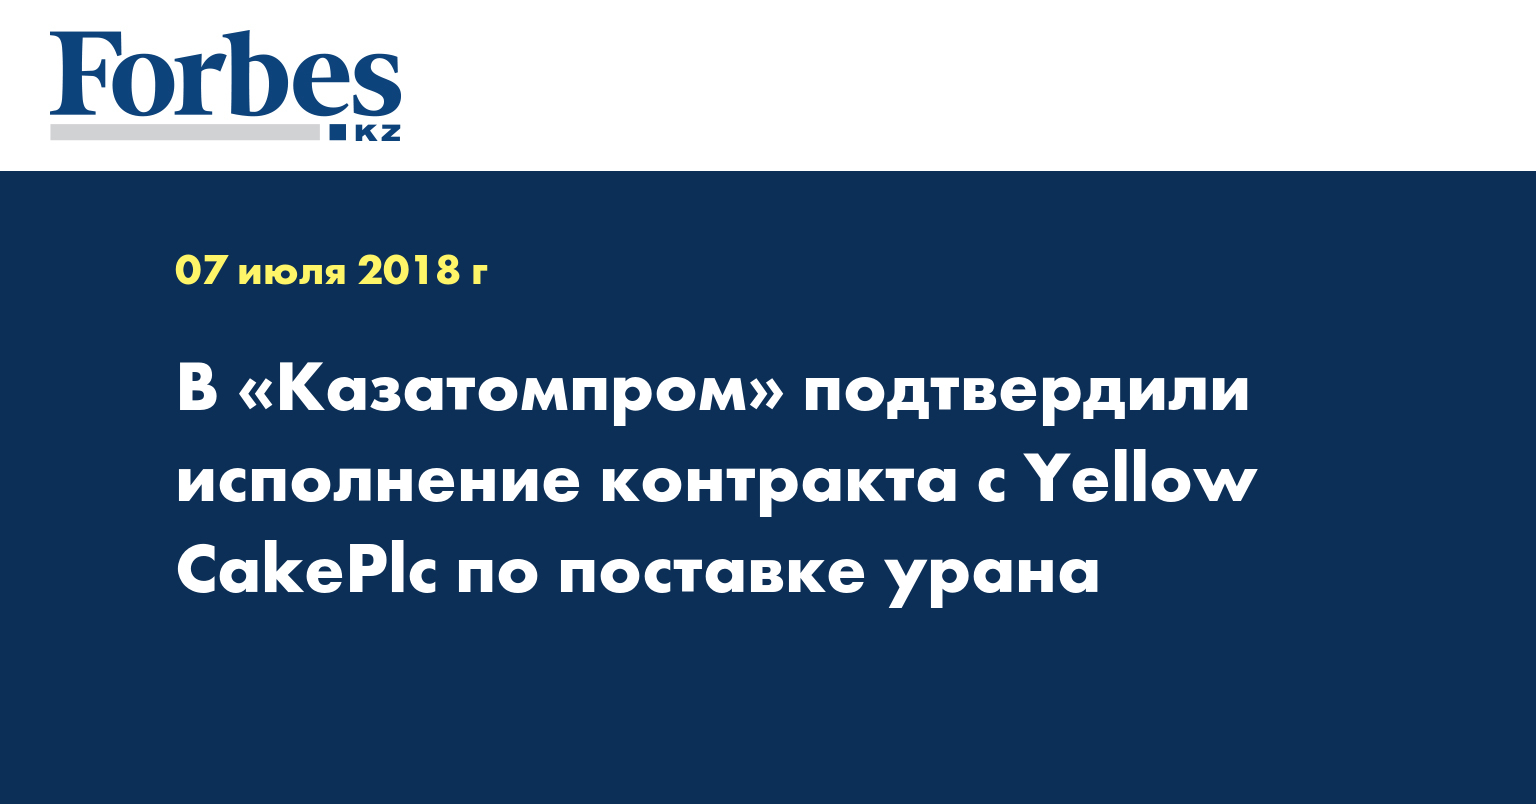 В «Казатомпром» подтвердили исполнение контракта с Yellow CakePlc по поставке урана